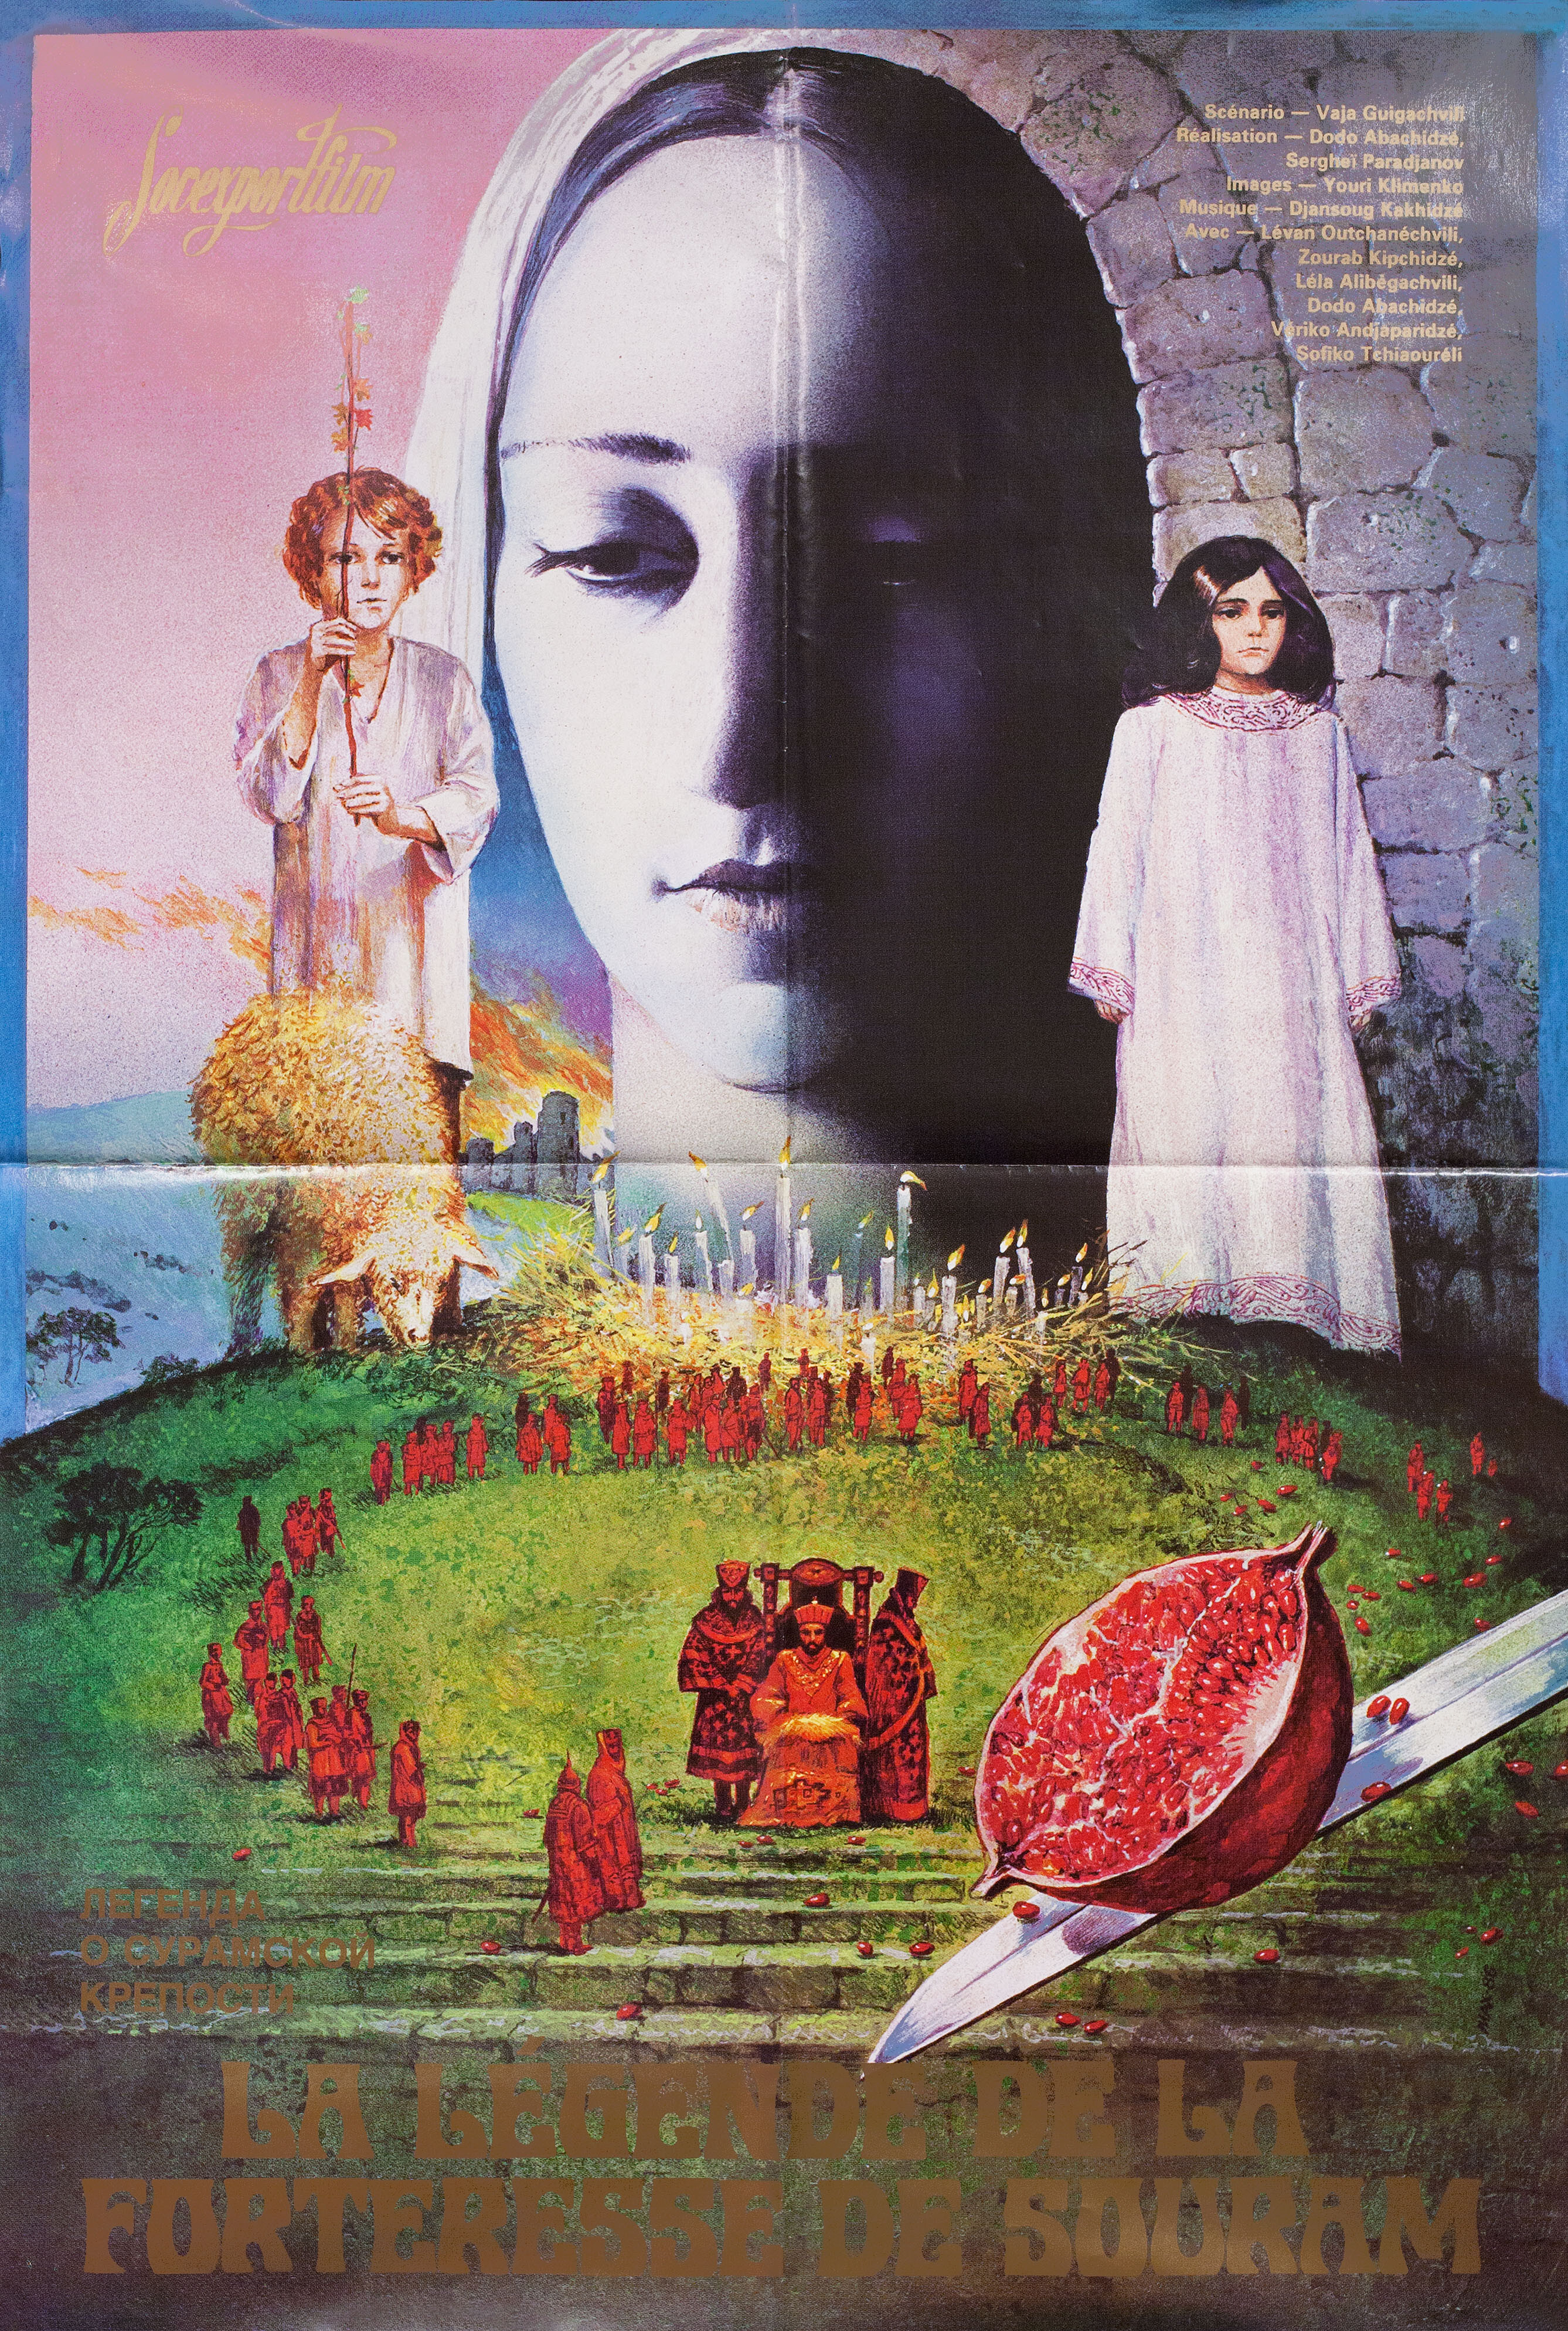 Легенда о Сурамской крепости (режиссёр Сергей Параджанов, 1985), советский постер к фильму, автор Макс, 1985 год